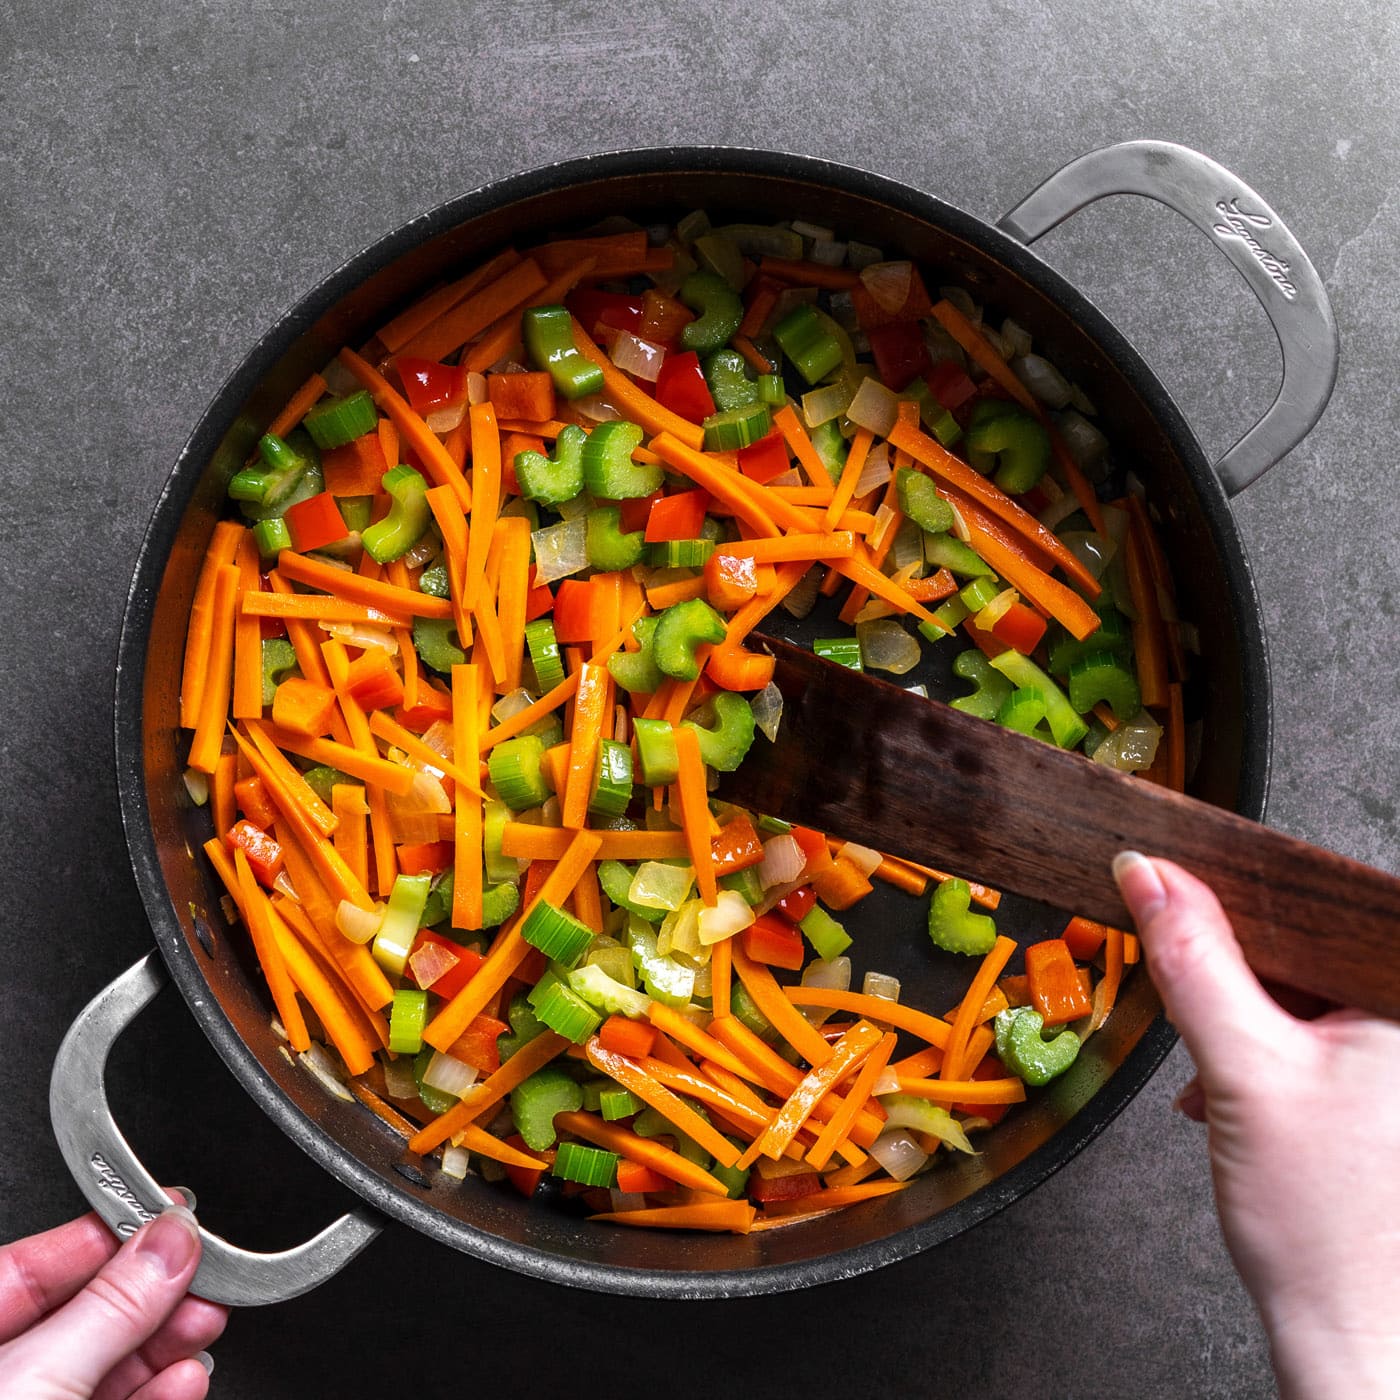 sauteeing veggies in a pan